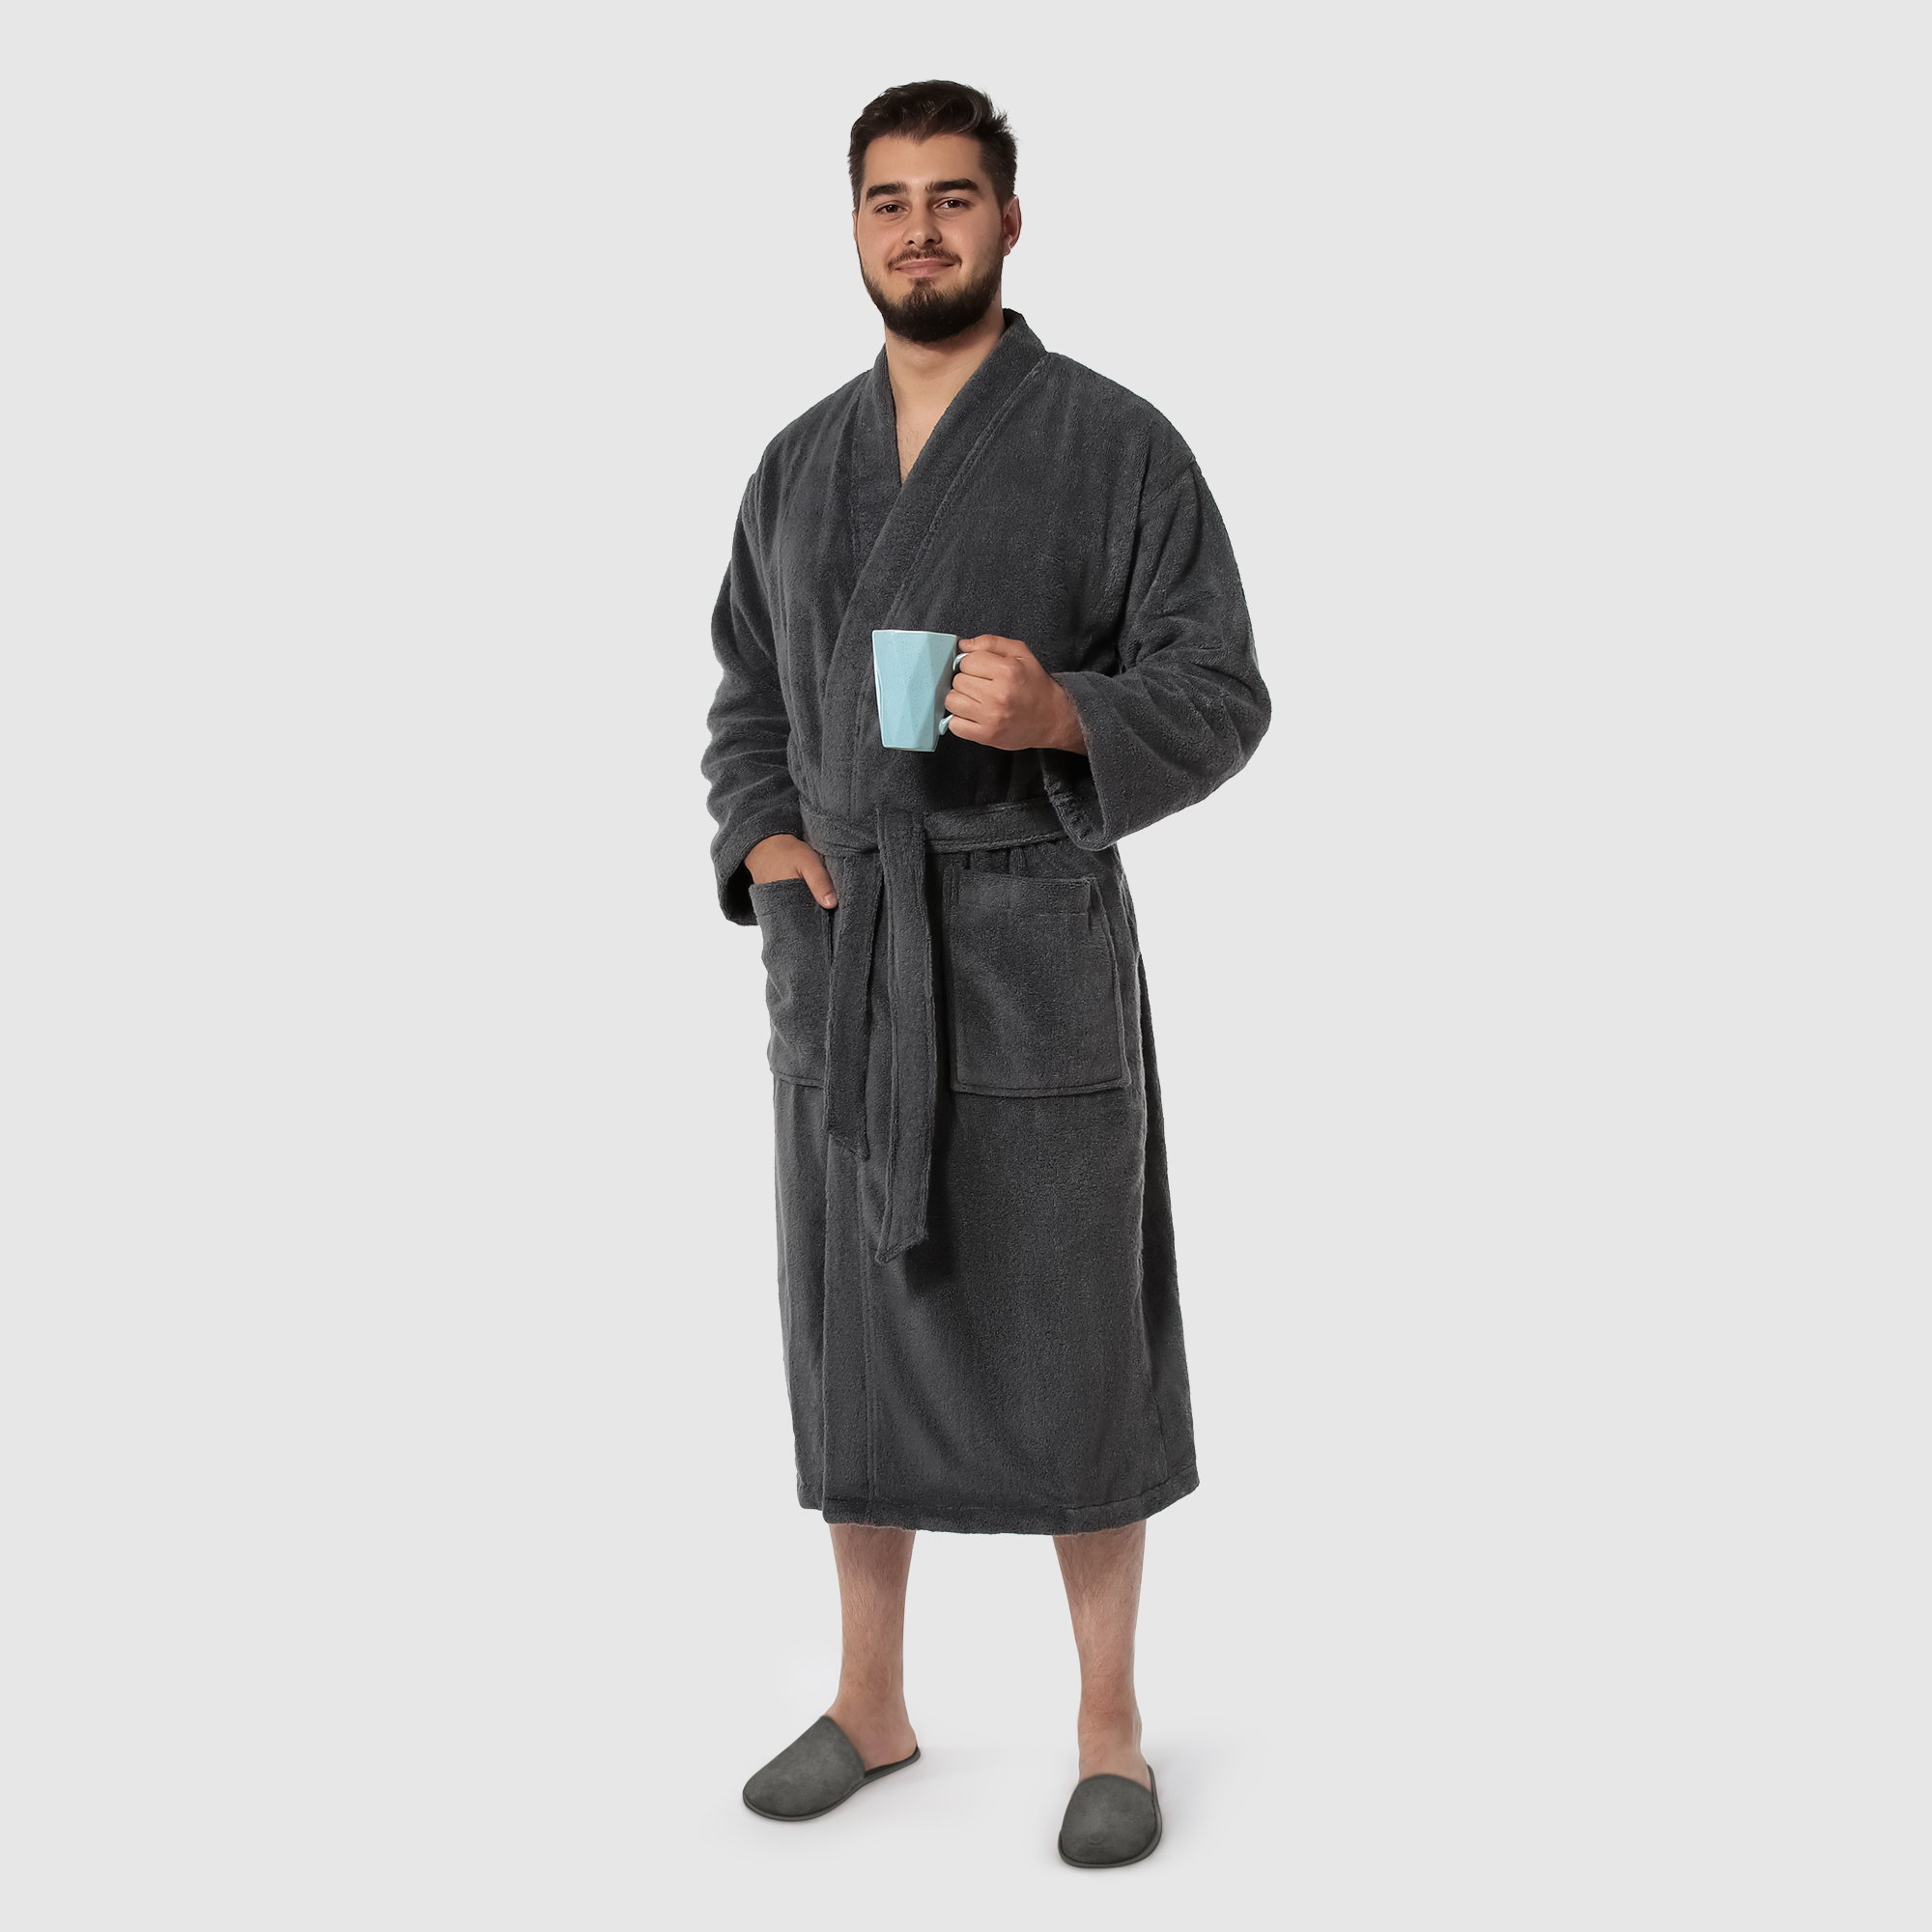 Мужской халат Maisonette Parla тёмно-серый M халат мужской asil sauna brown xl махровый с капюшоном